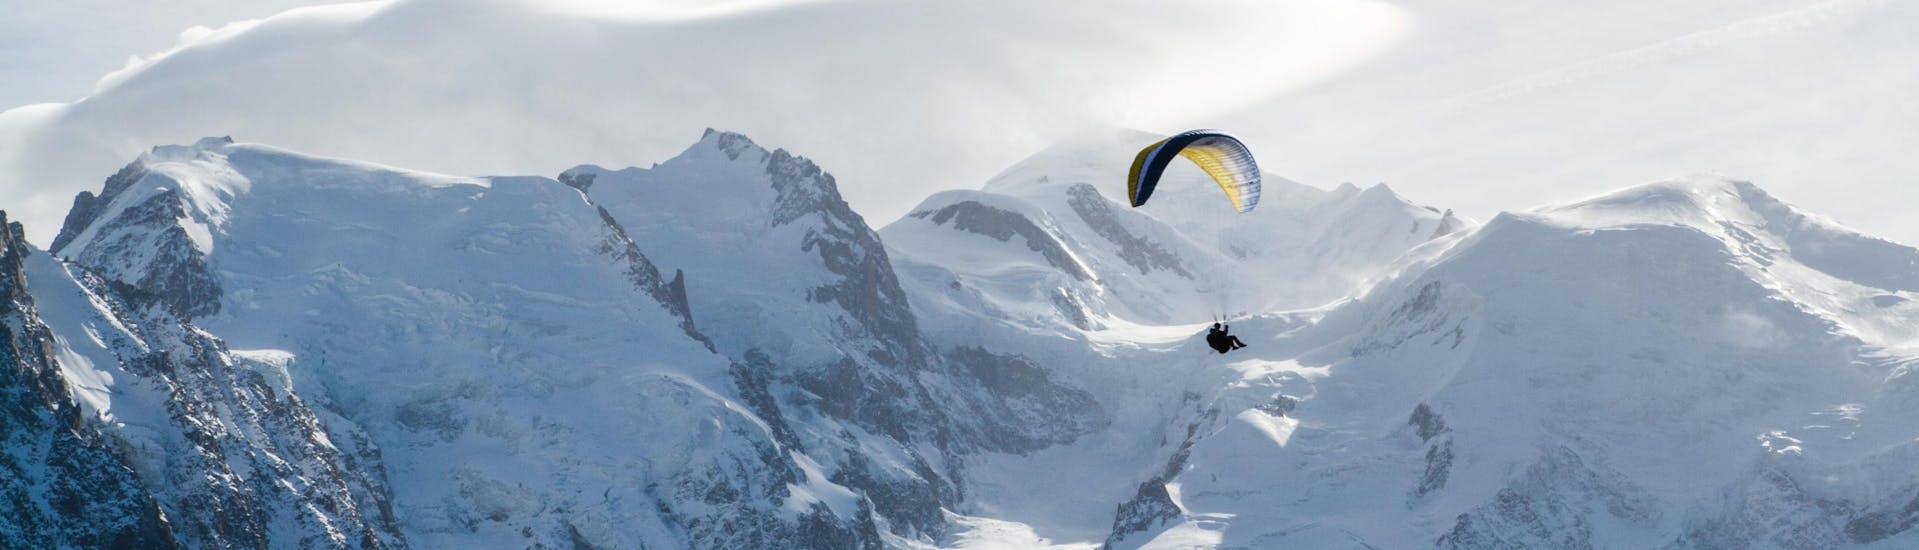 Une personne effectue un vol en parapente dans la vallée de Chamonix depuis l'Aiguille du Midi avec en fond les montagnes enneigées.